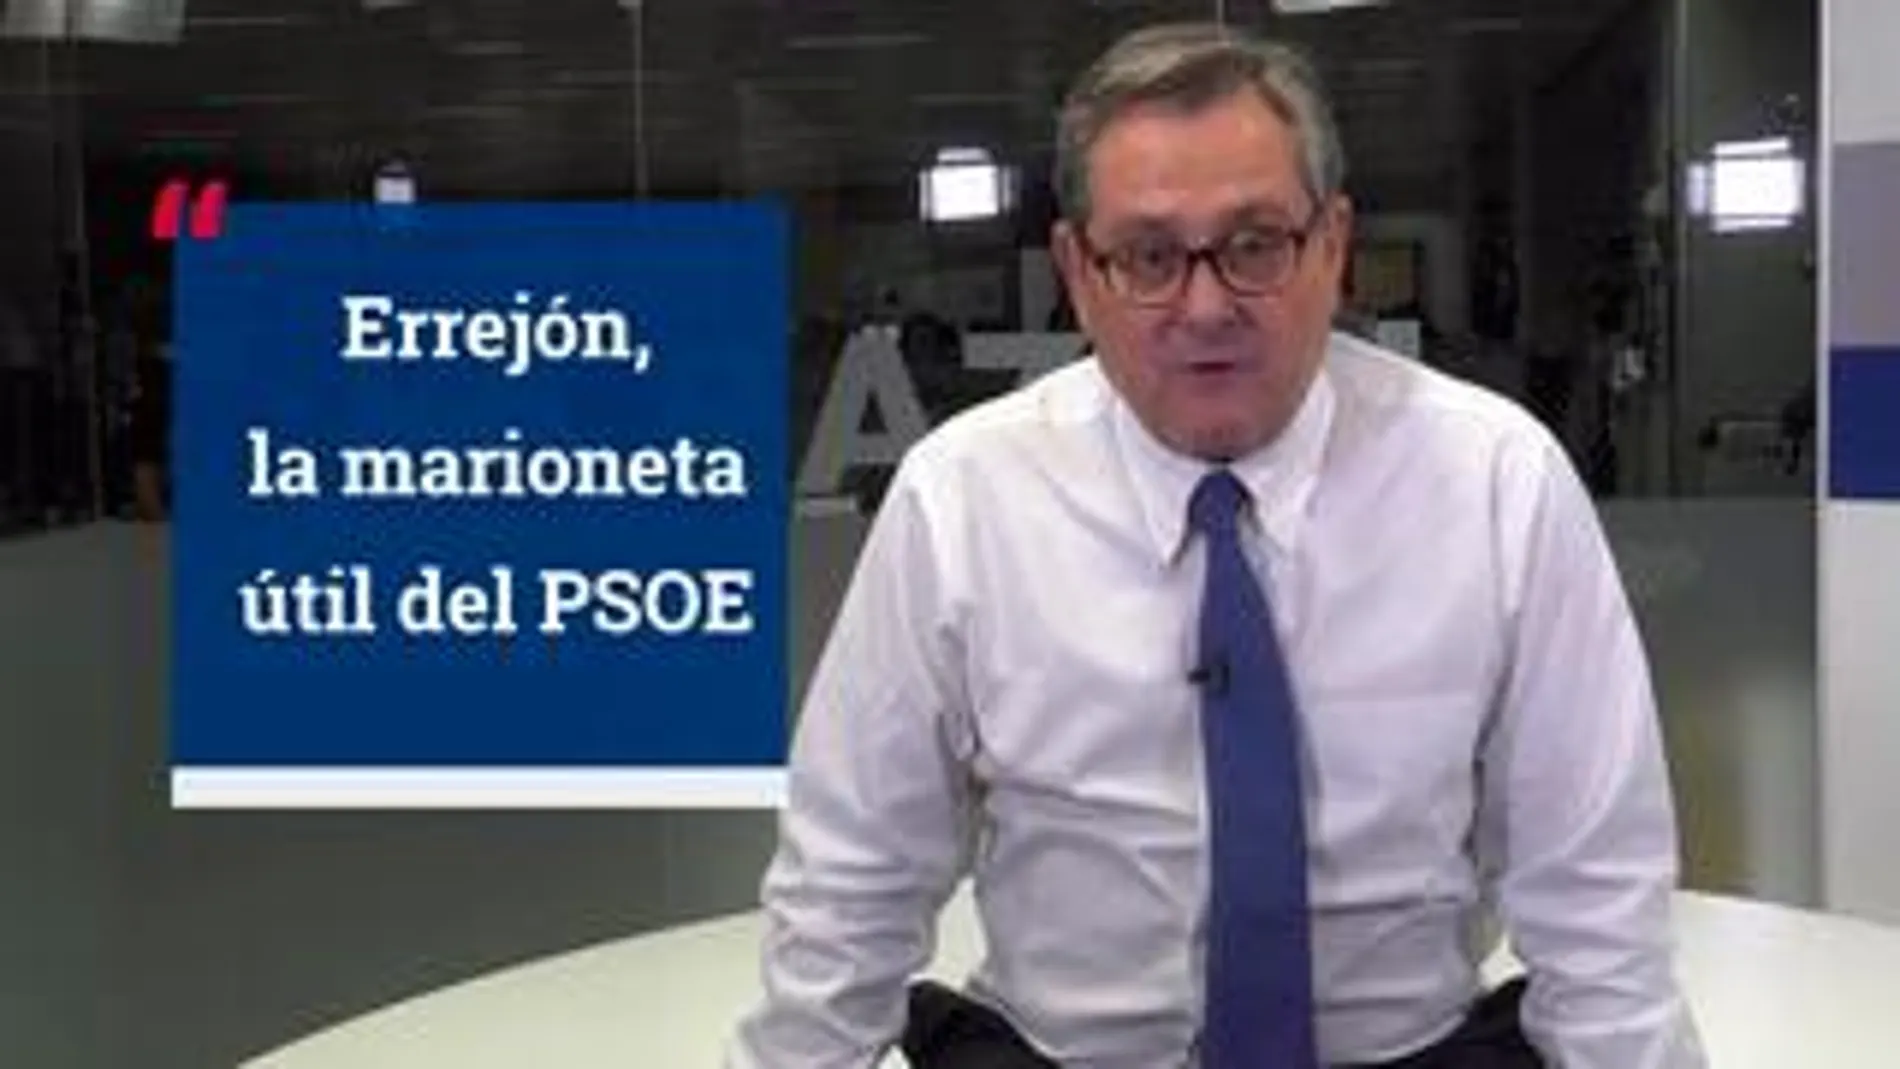 La opinión de Francisco Marhuenda: “Errejón, la marioneta útil del PSOE”